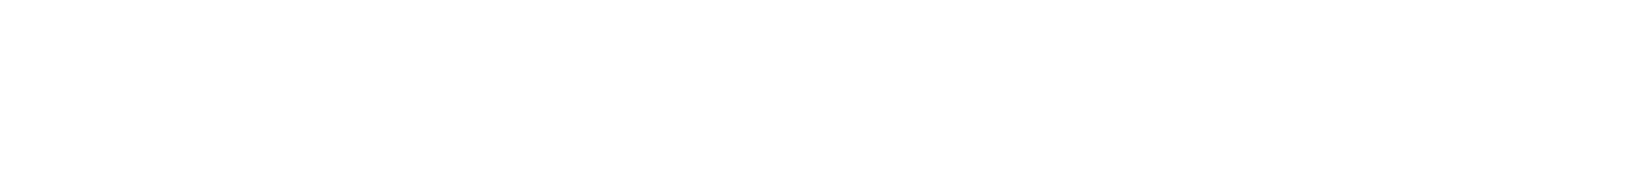 Giancarla Lobbrecht, Sr  & Sra  van de Griend, Valeria van de Griend y Piet Bouman